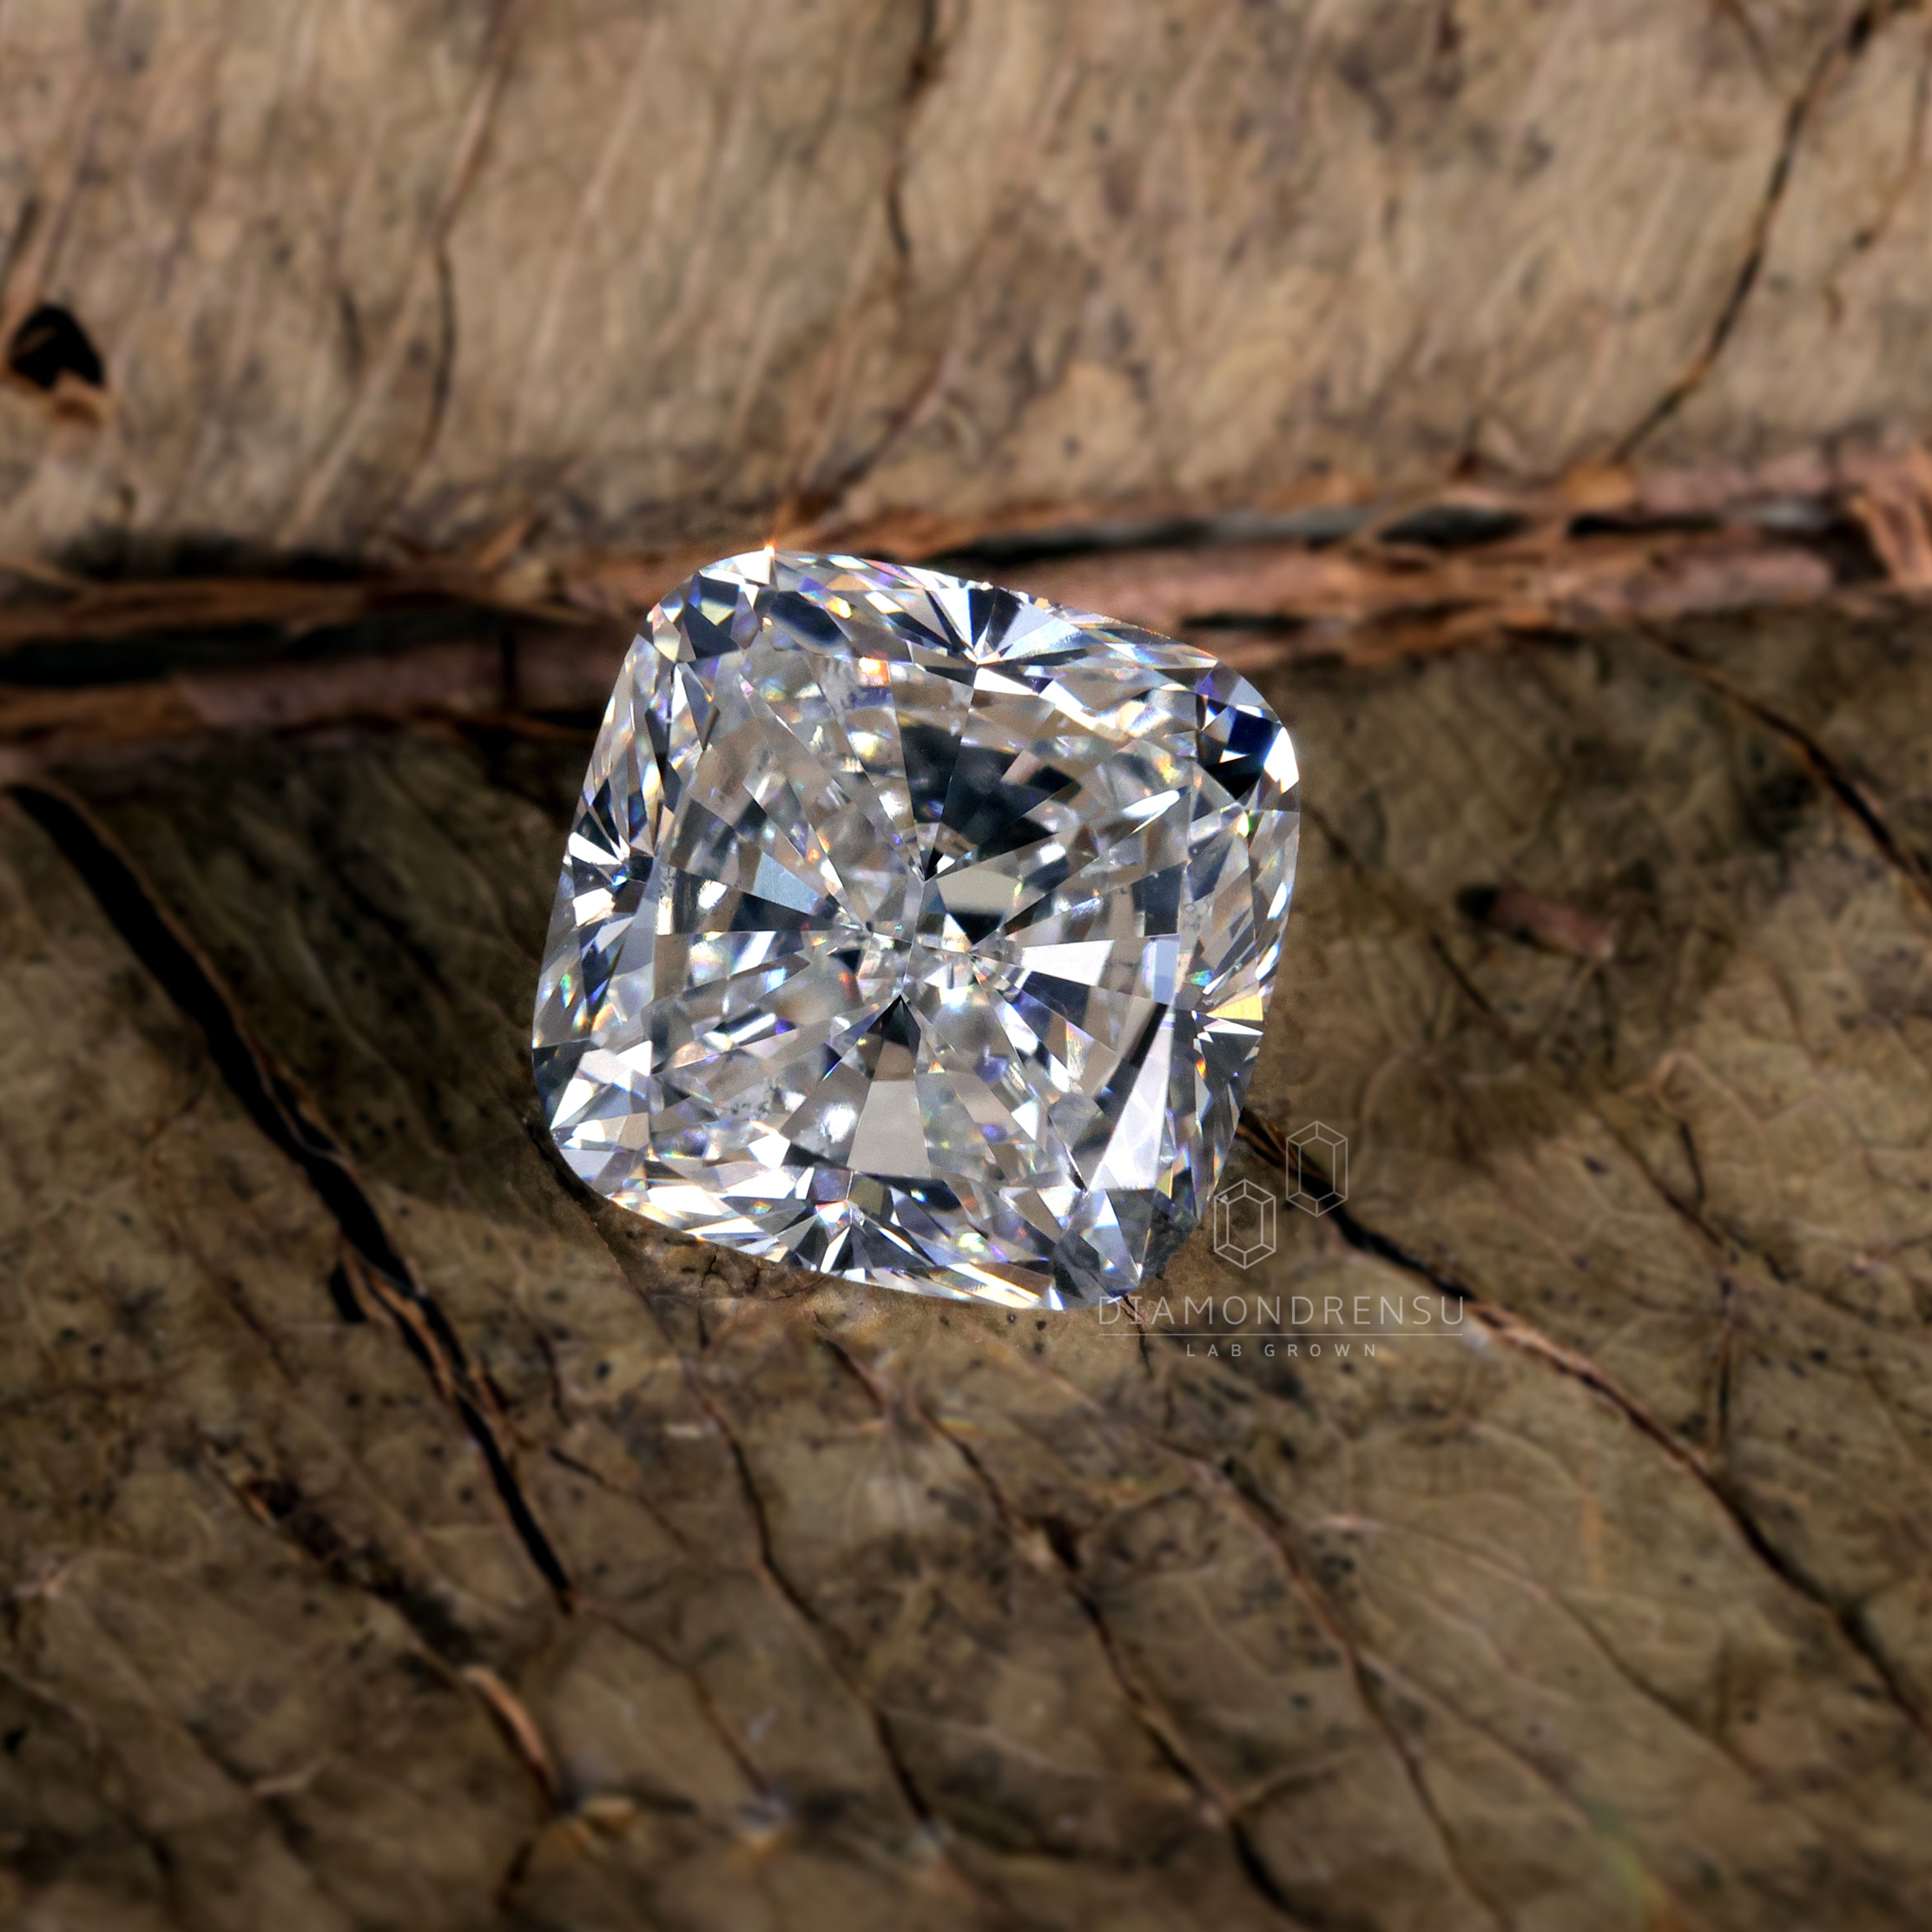 diamondrensu lab created diamond